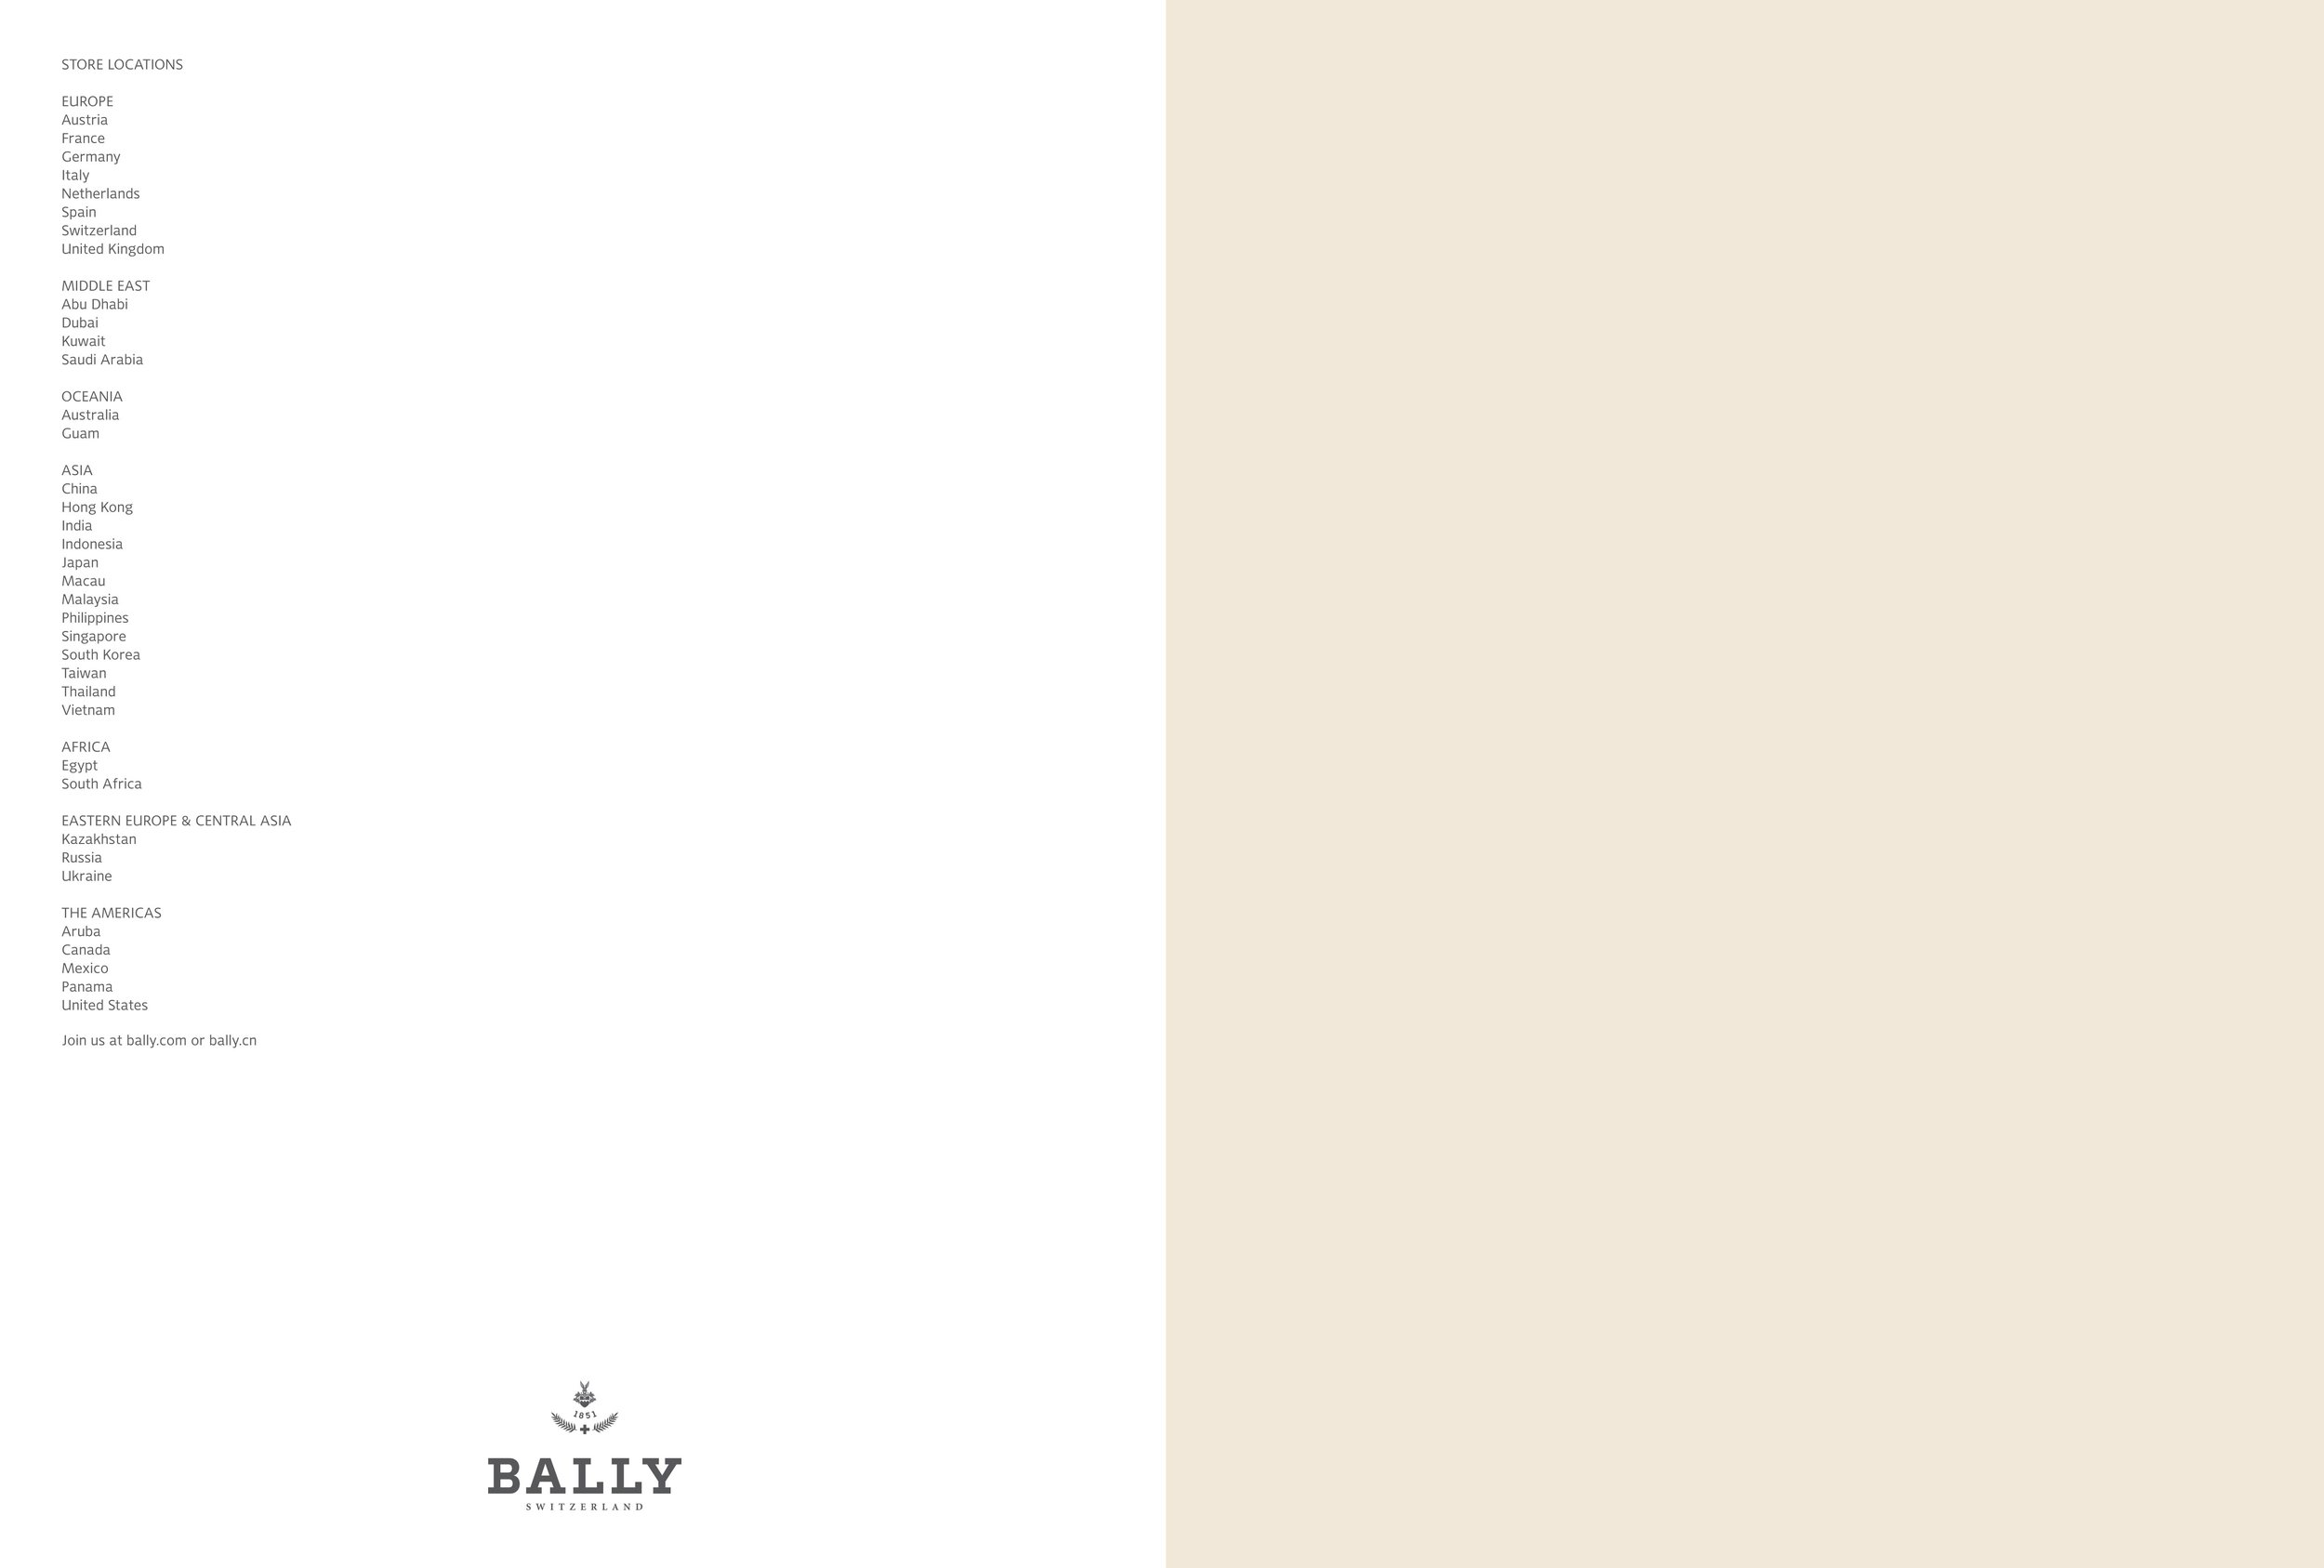 Bally-ss14_catalogue-final-3.jpg